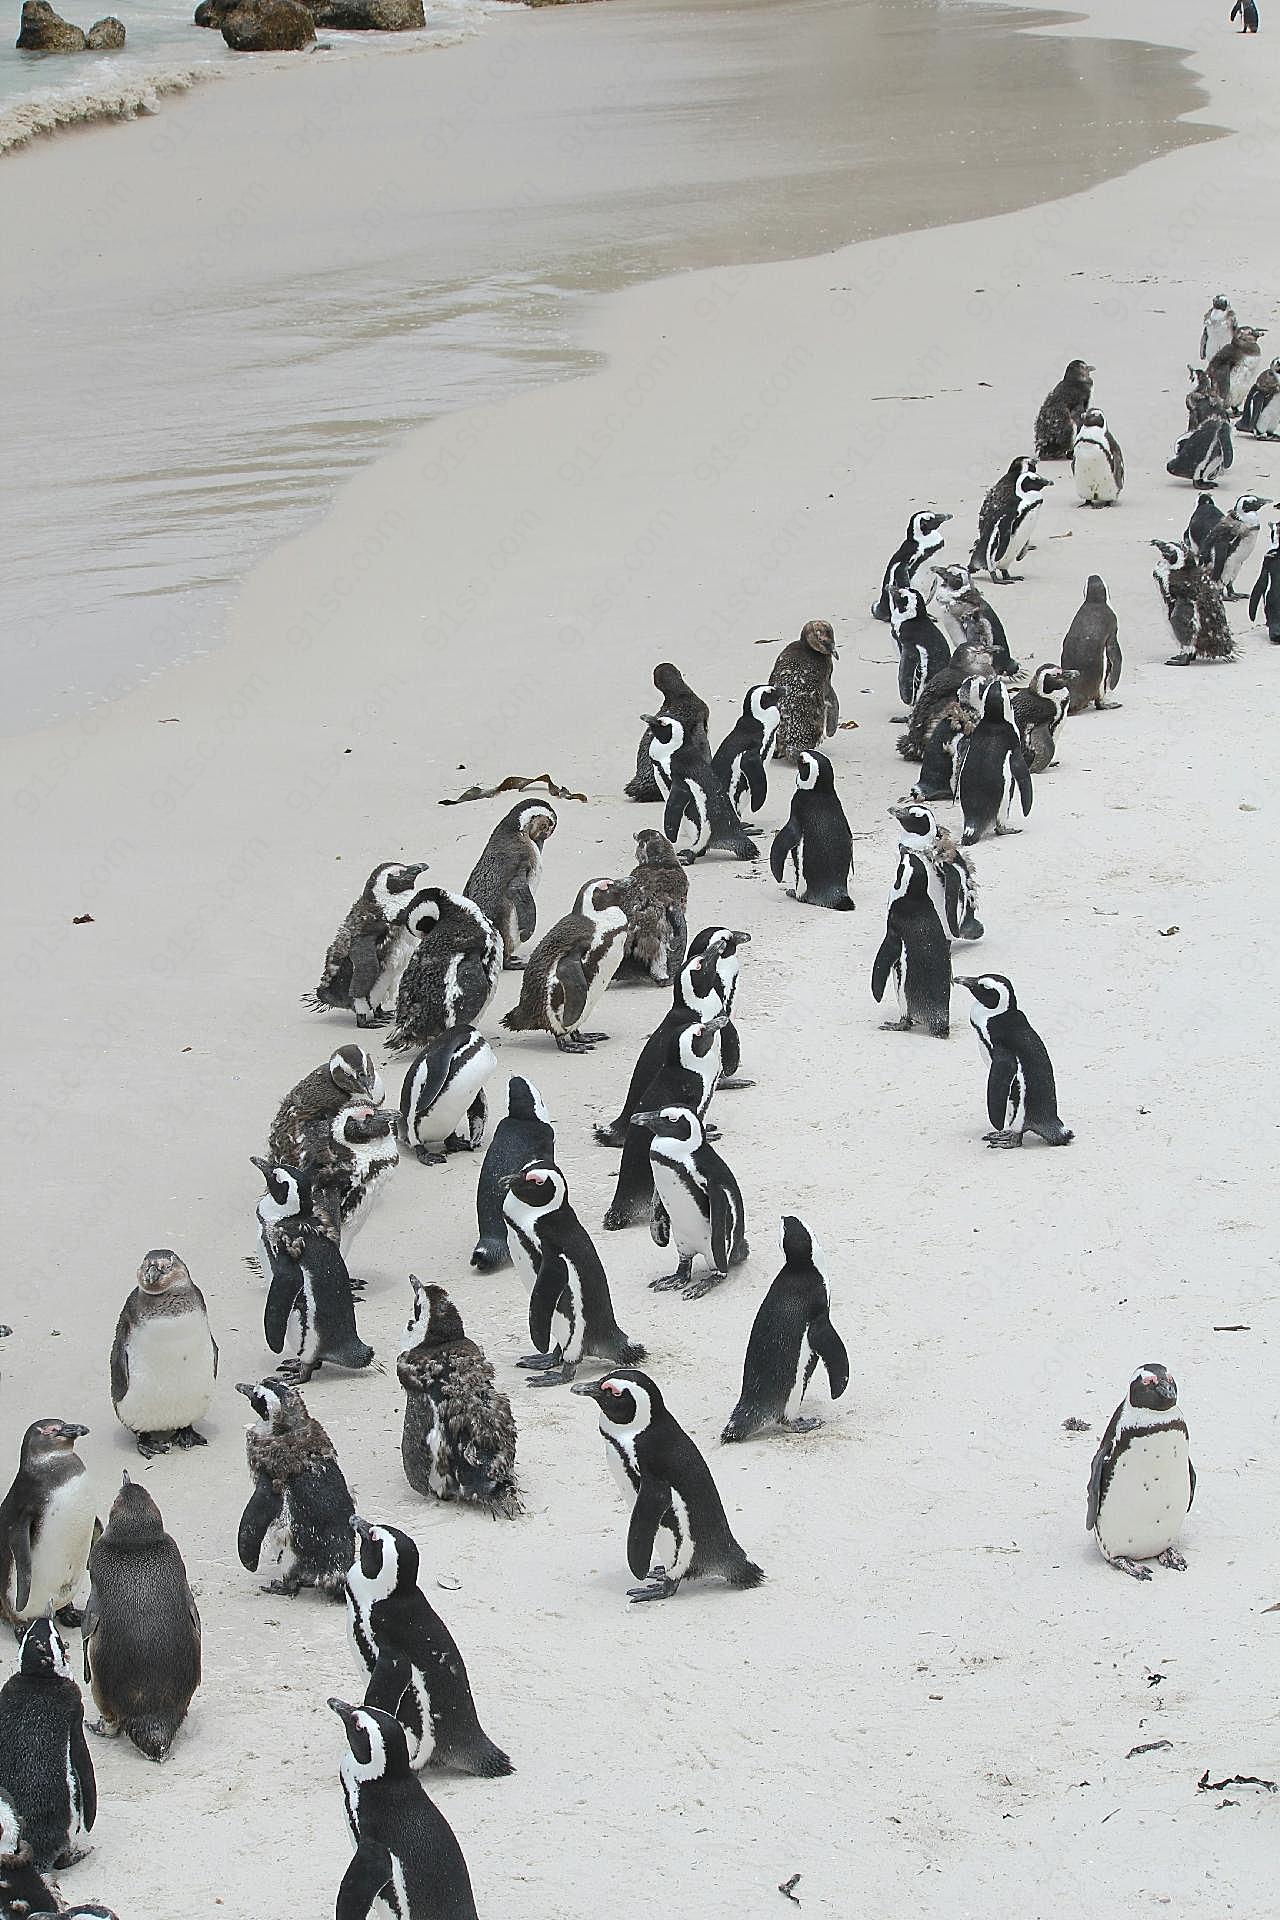 沙滩企鹅群图片摄影高清